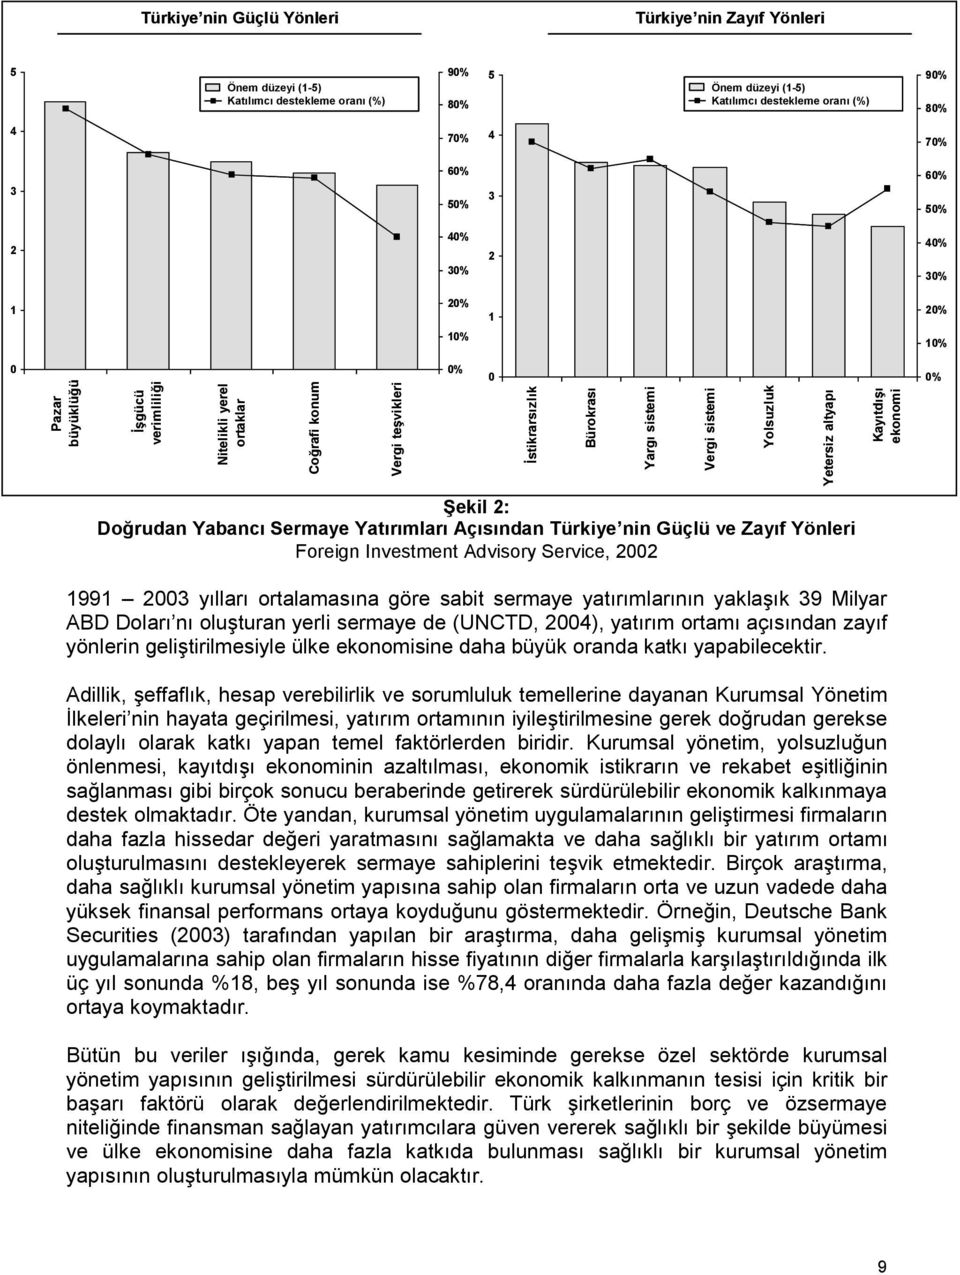 Yolsuzluk Yetersiz altyapı Kayıtdışı ekonomi 0% Şekil 2: Doğrudan Yabancı Sermaye Yatırımları Açısından Türkiye nin Güçlü ve Zayıf Yönleri Foreign Investment Advisory Service, 2002 1991 2003 yılları